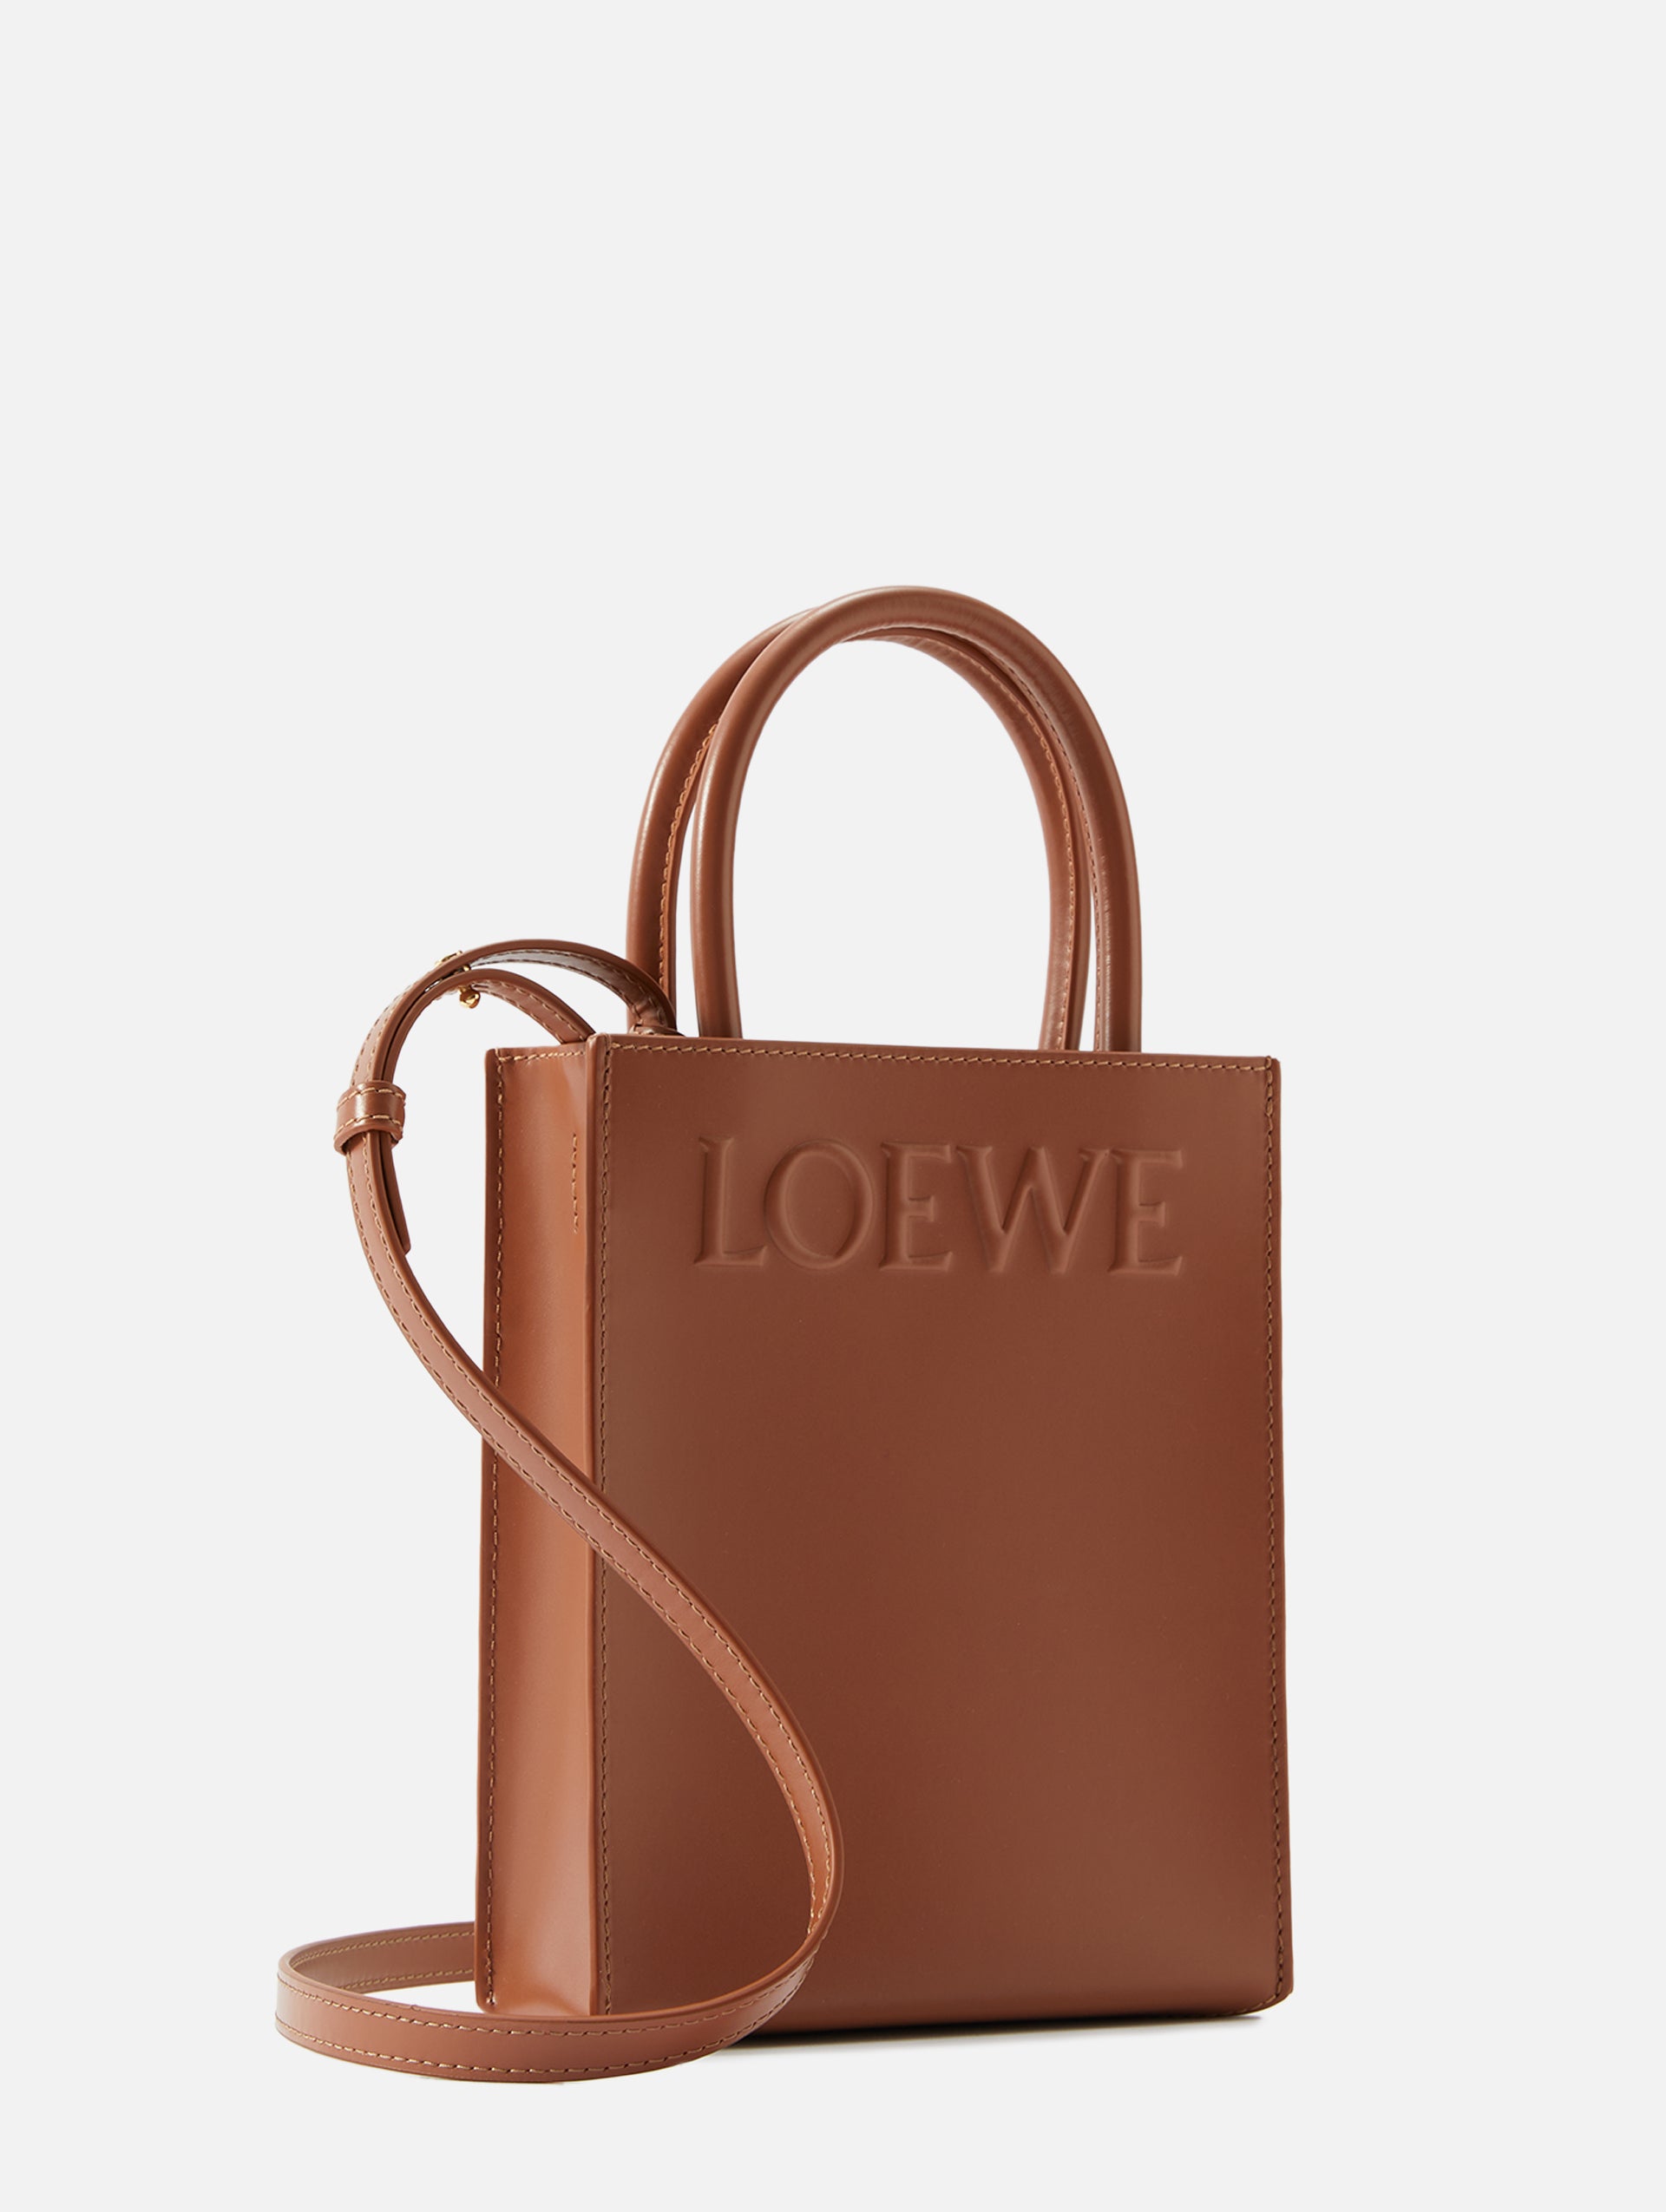 Tan Hammock small leather tote bag, LOEWE